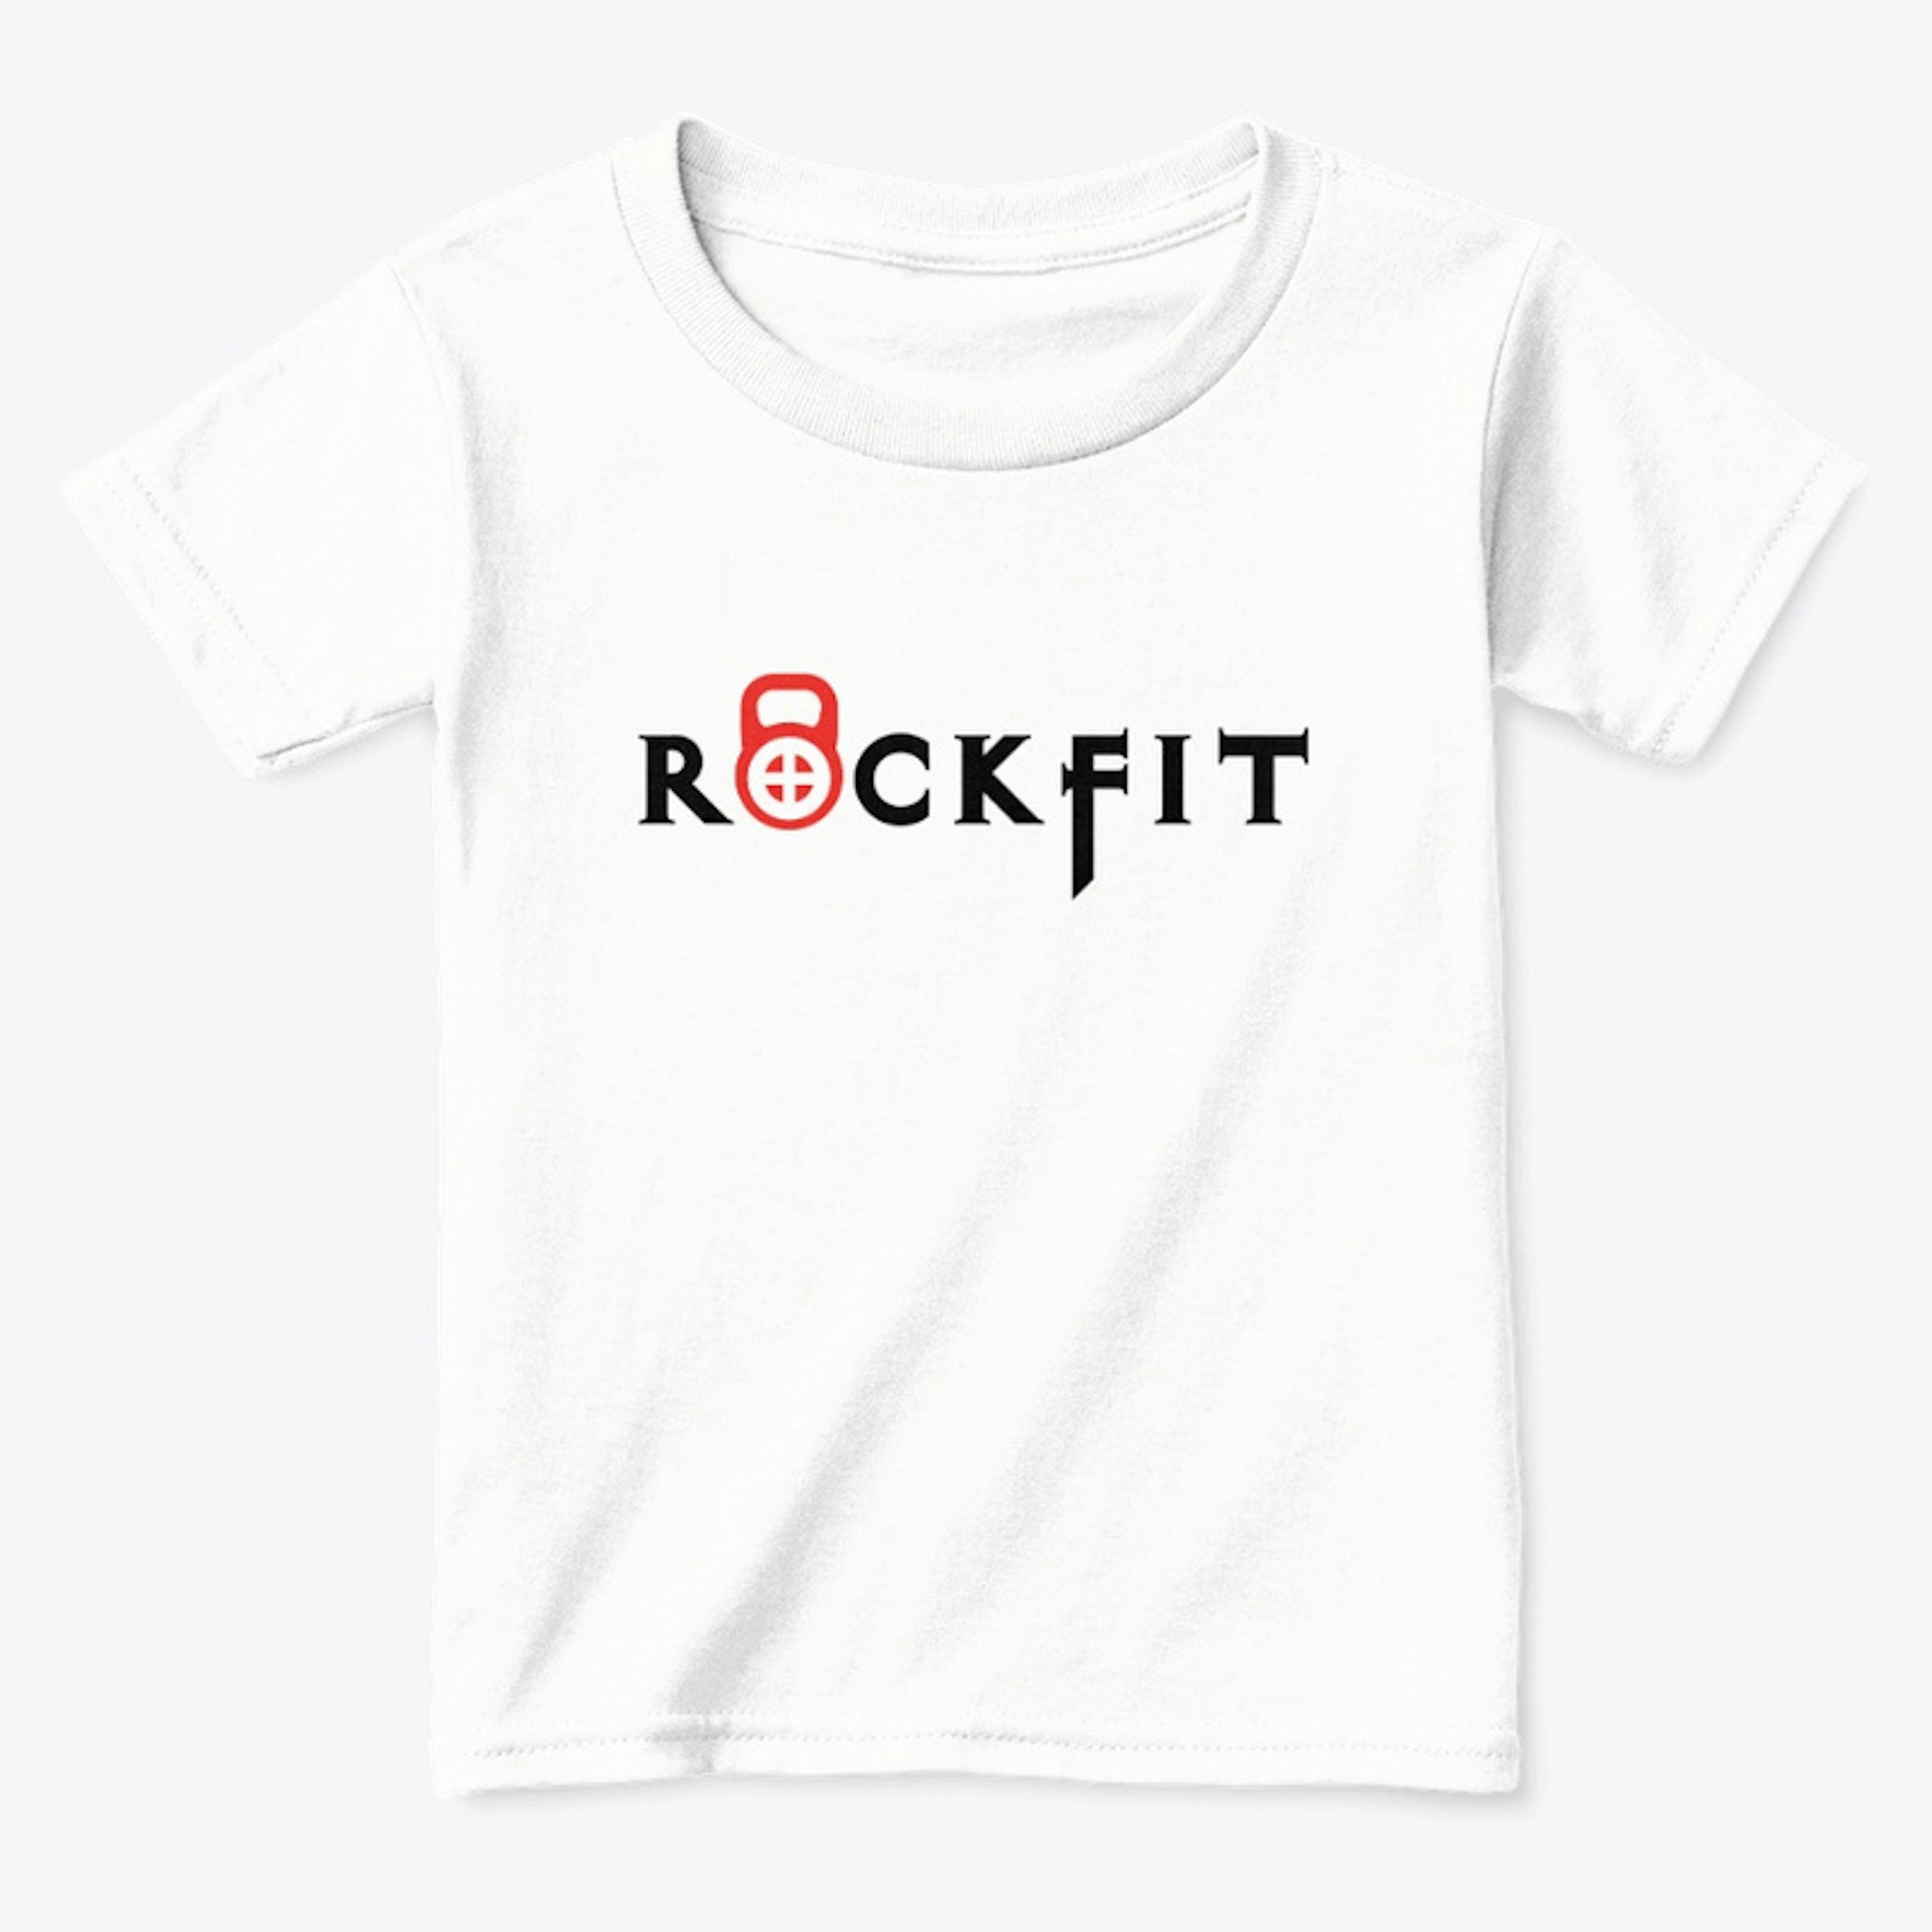 Rockfit Toddler White Shirt